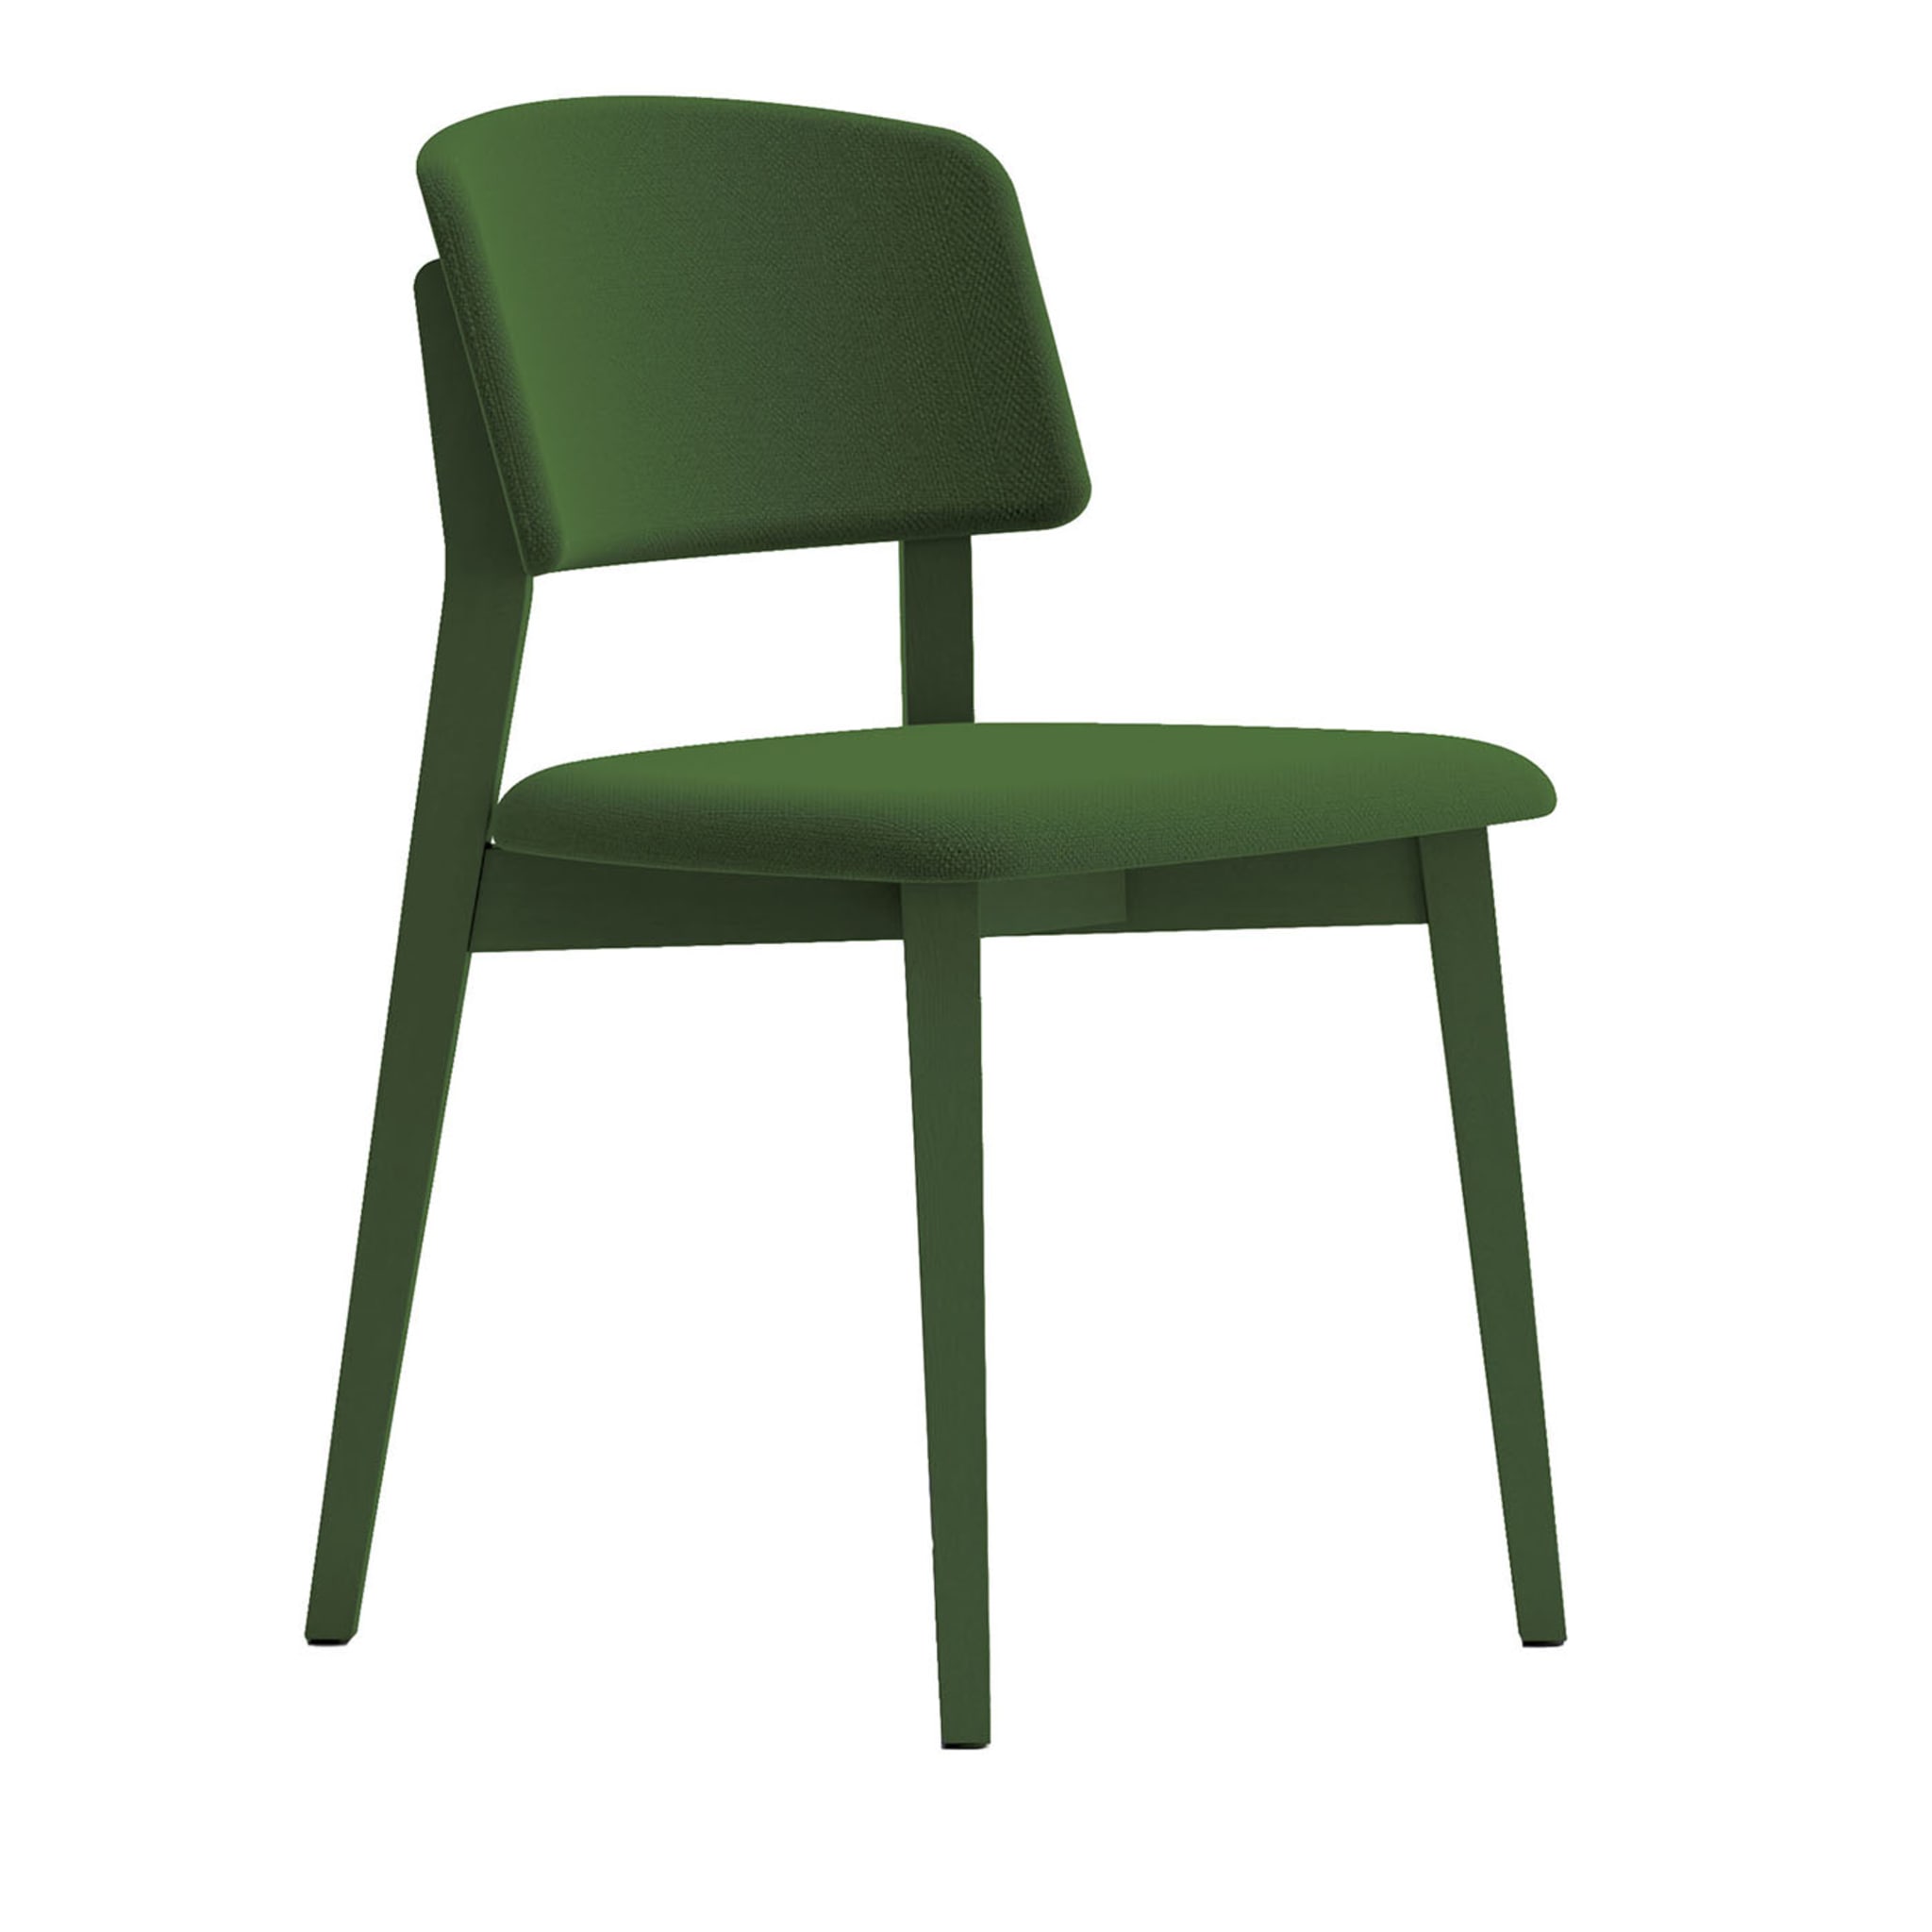 Wrap Wood Grüner Stuhl von Copiosa Lab #1 - Hauptansicht